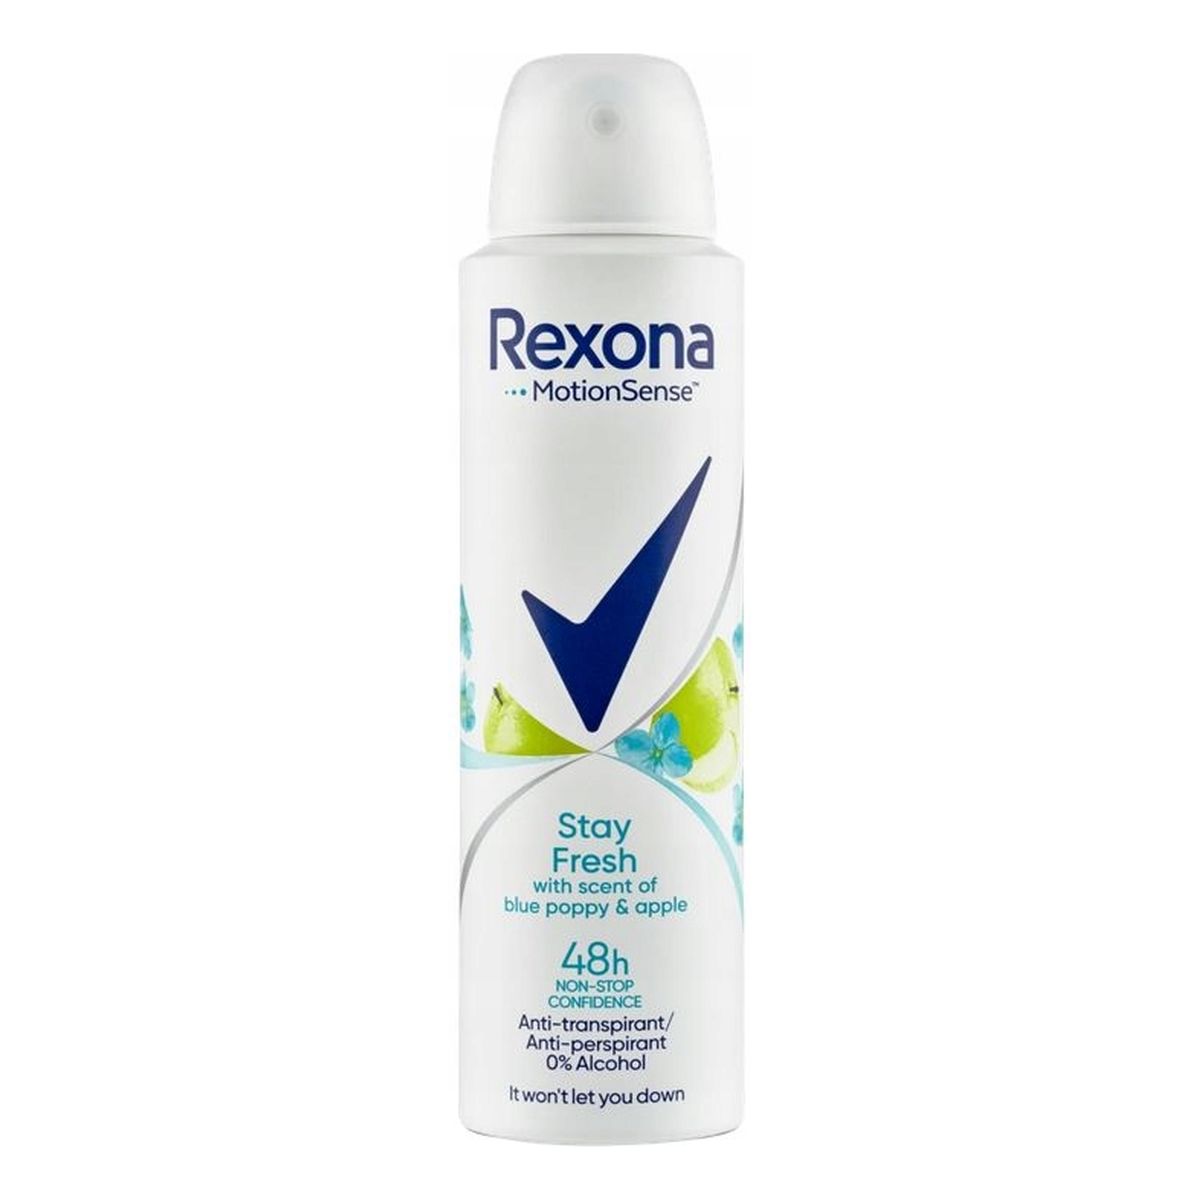 Rexona Stay fresh anti-perspirant 48h antyperspirant spray blue poppy & apple 150ml